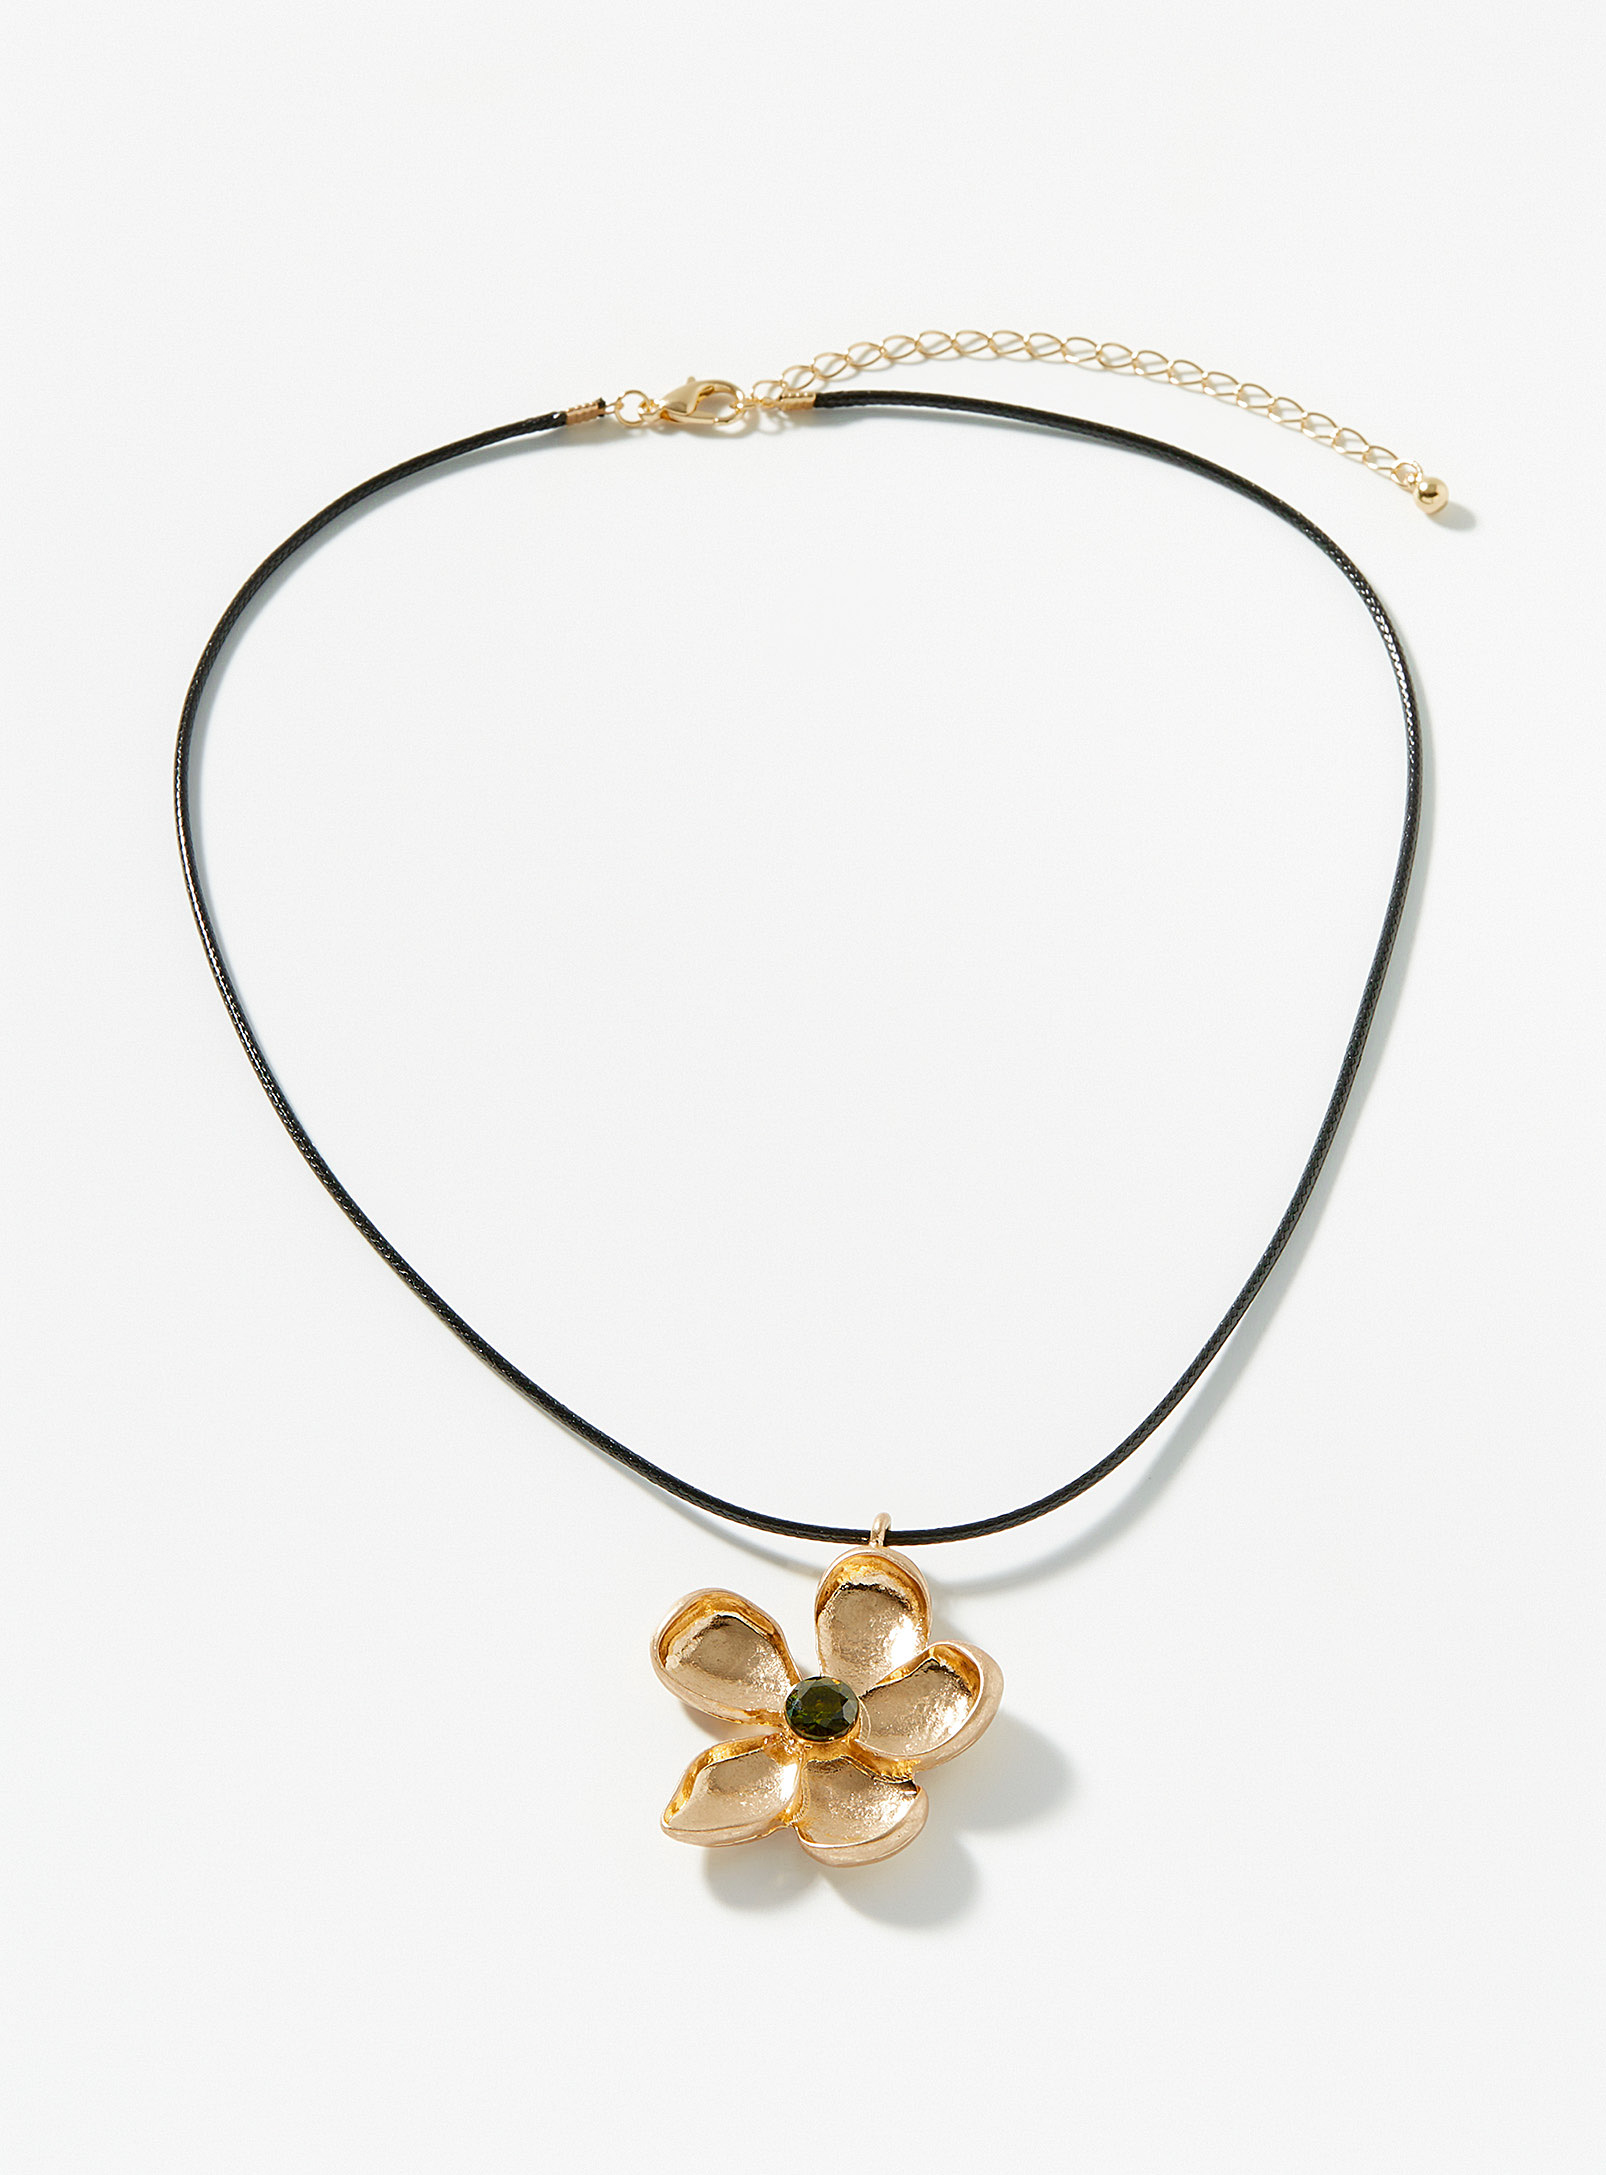 Simons - Women's Golden flower cord necklace